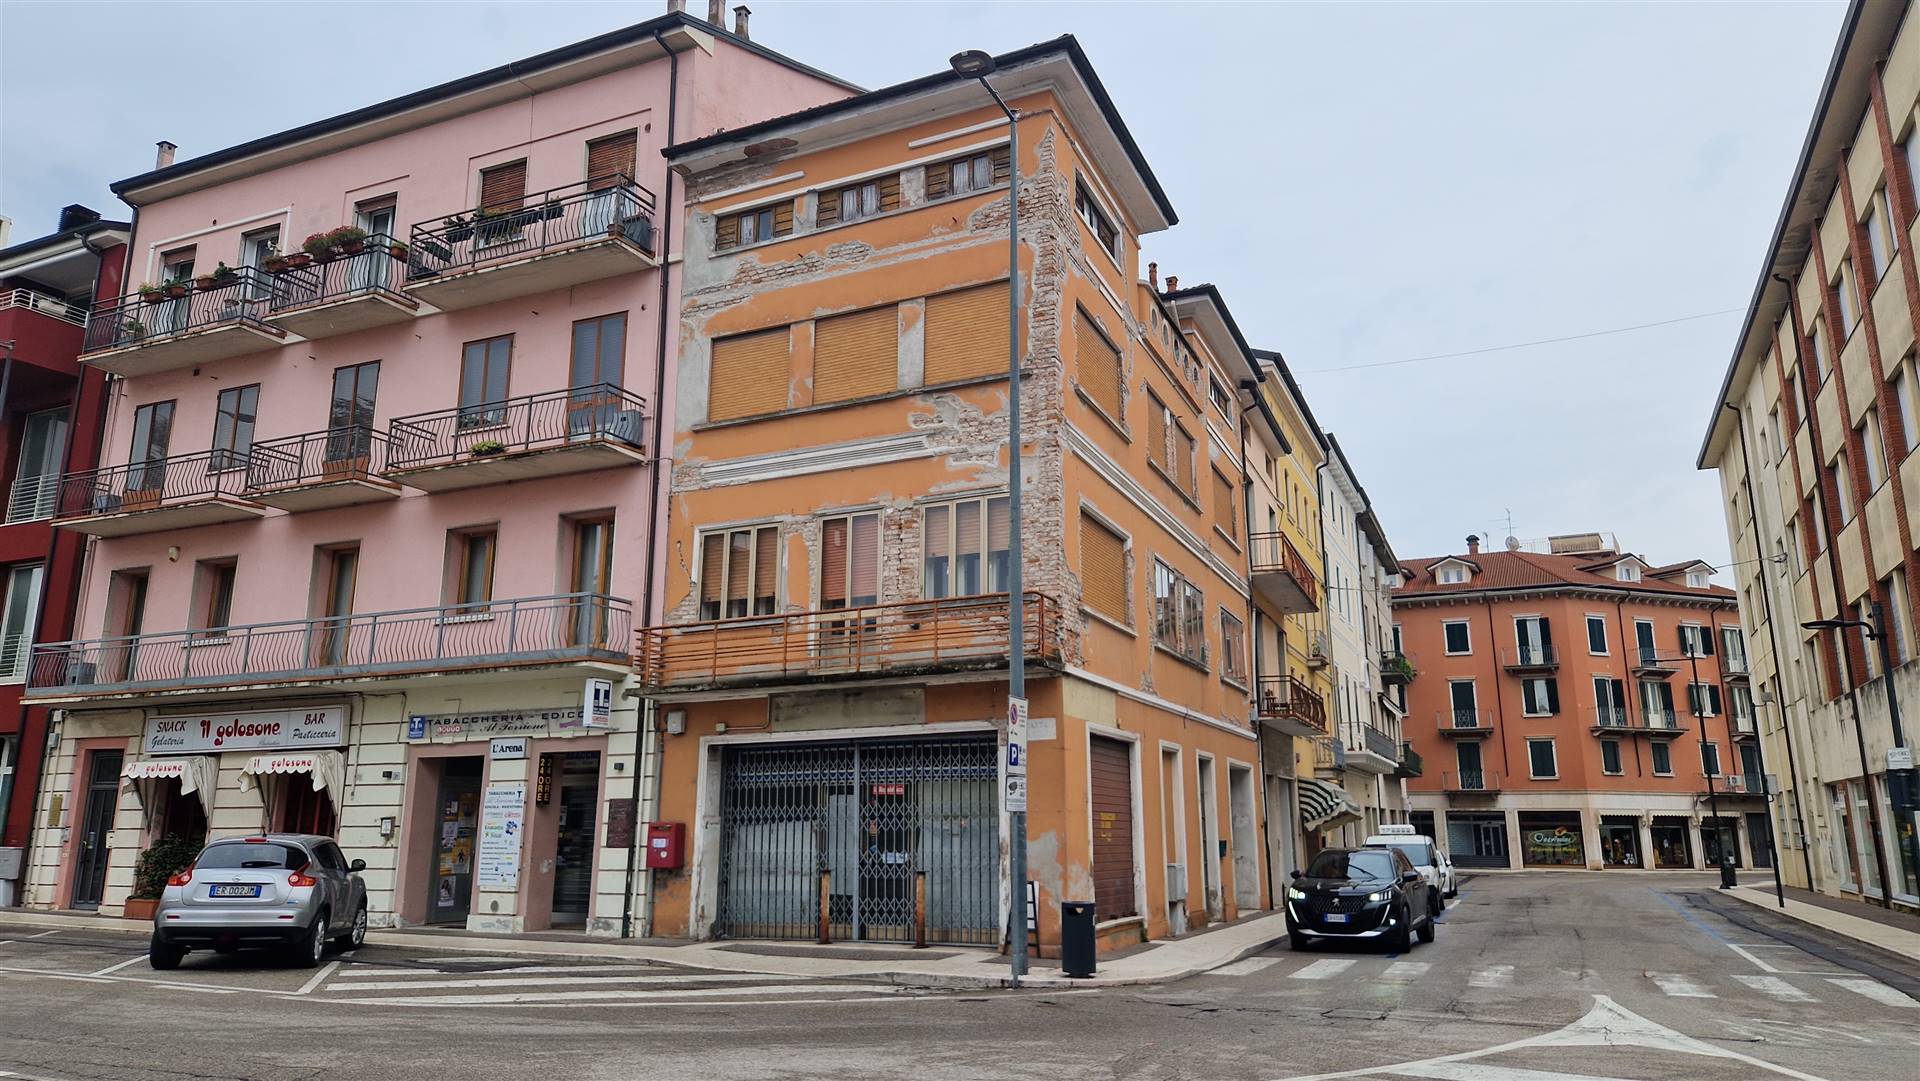 Palazzo / Stabile in vendita a Legnago, 7 locali, prezzo € 160.000 | PortaleAgenzieImmobiliari.it